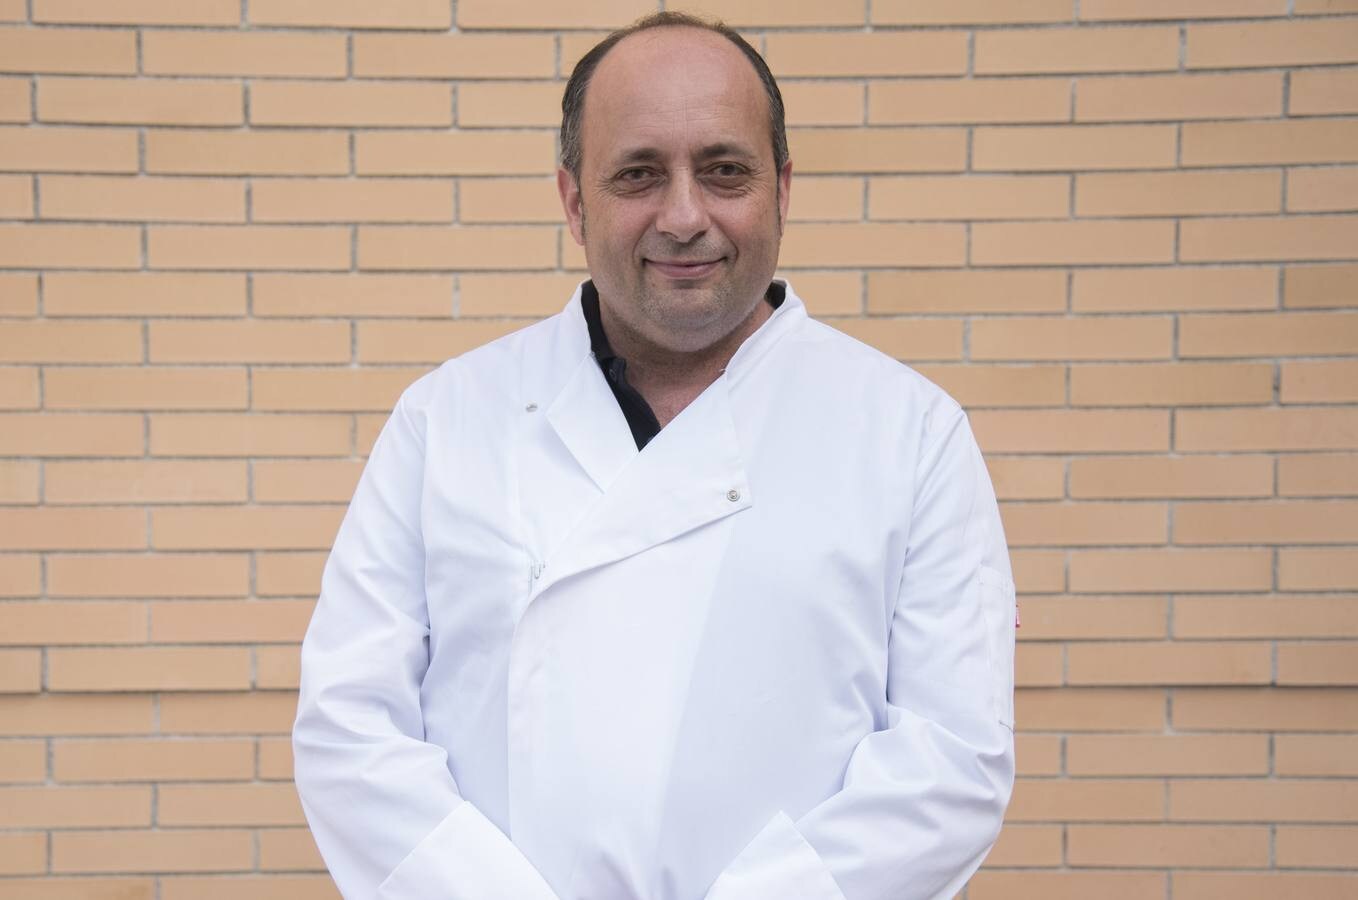 Siete restaurantes valencianos de alta cocina participan en Gastroplan. La iniciativa permite degustar menús por grandes chefs por solo 25 euros